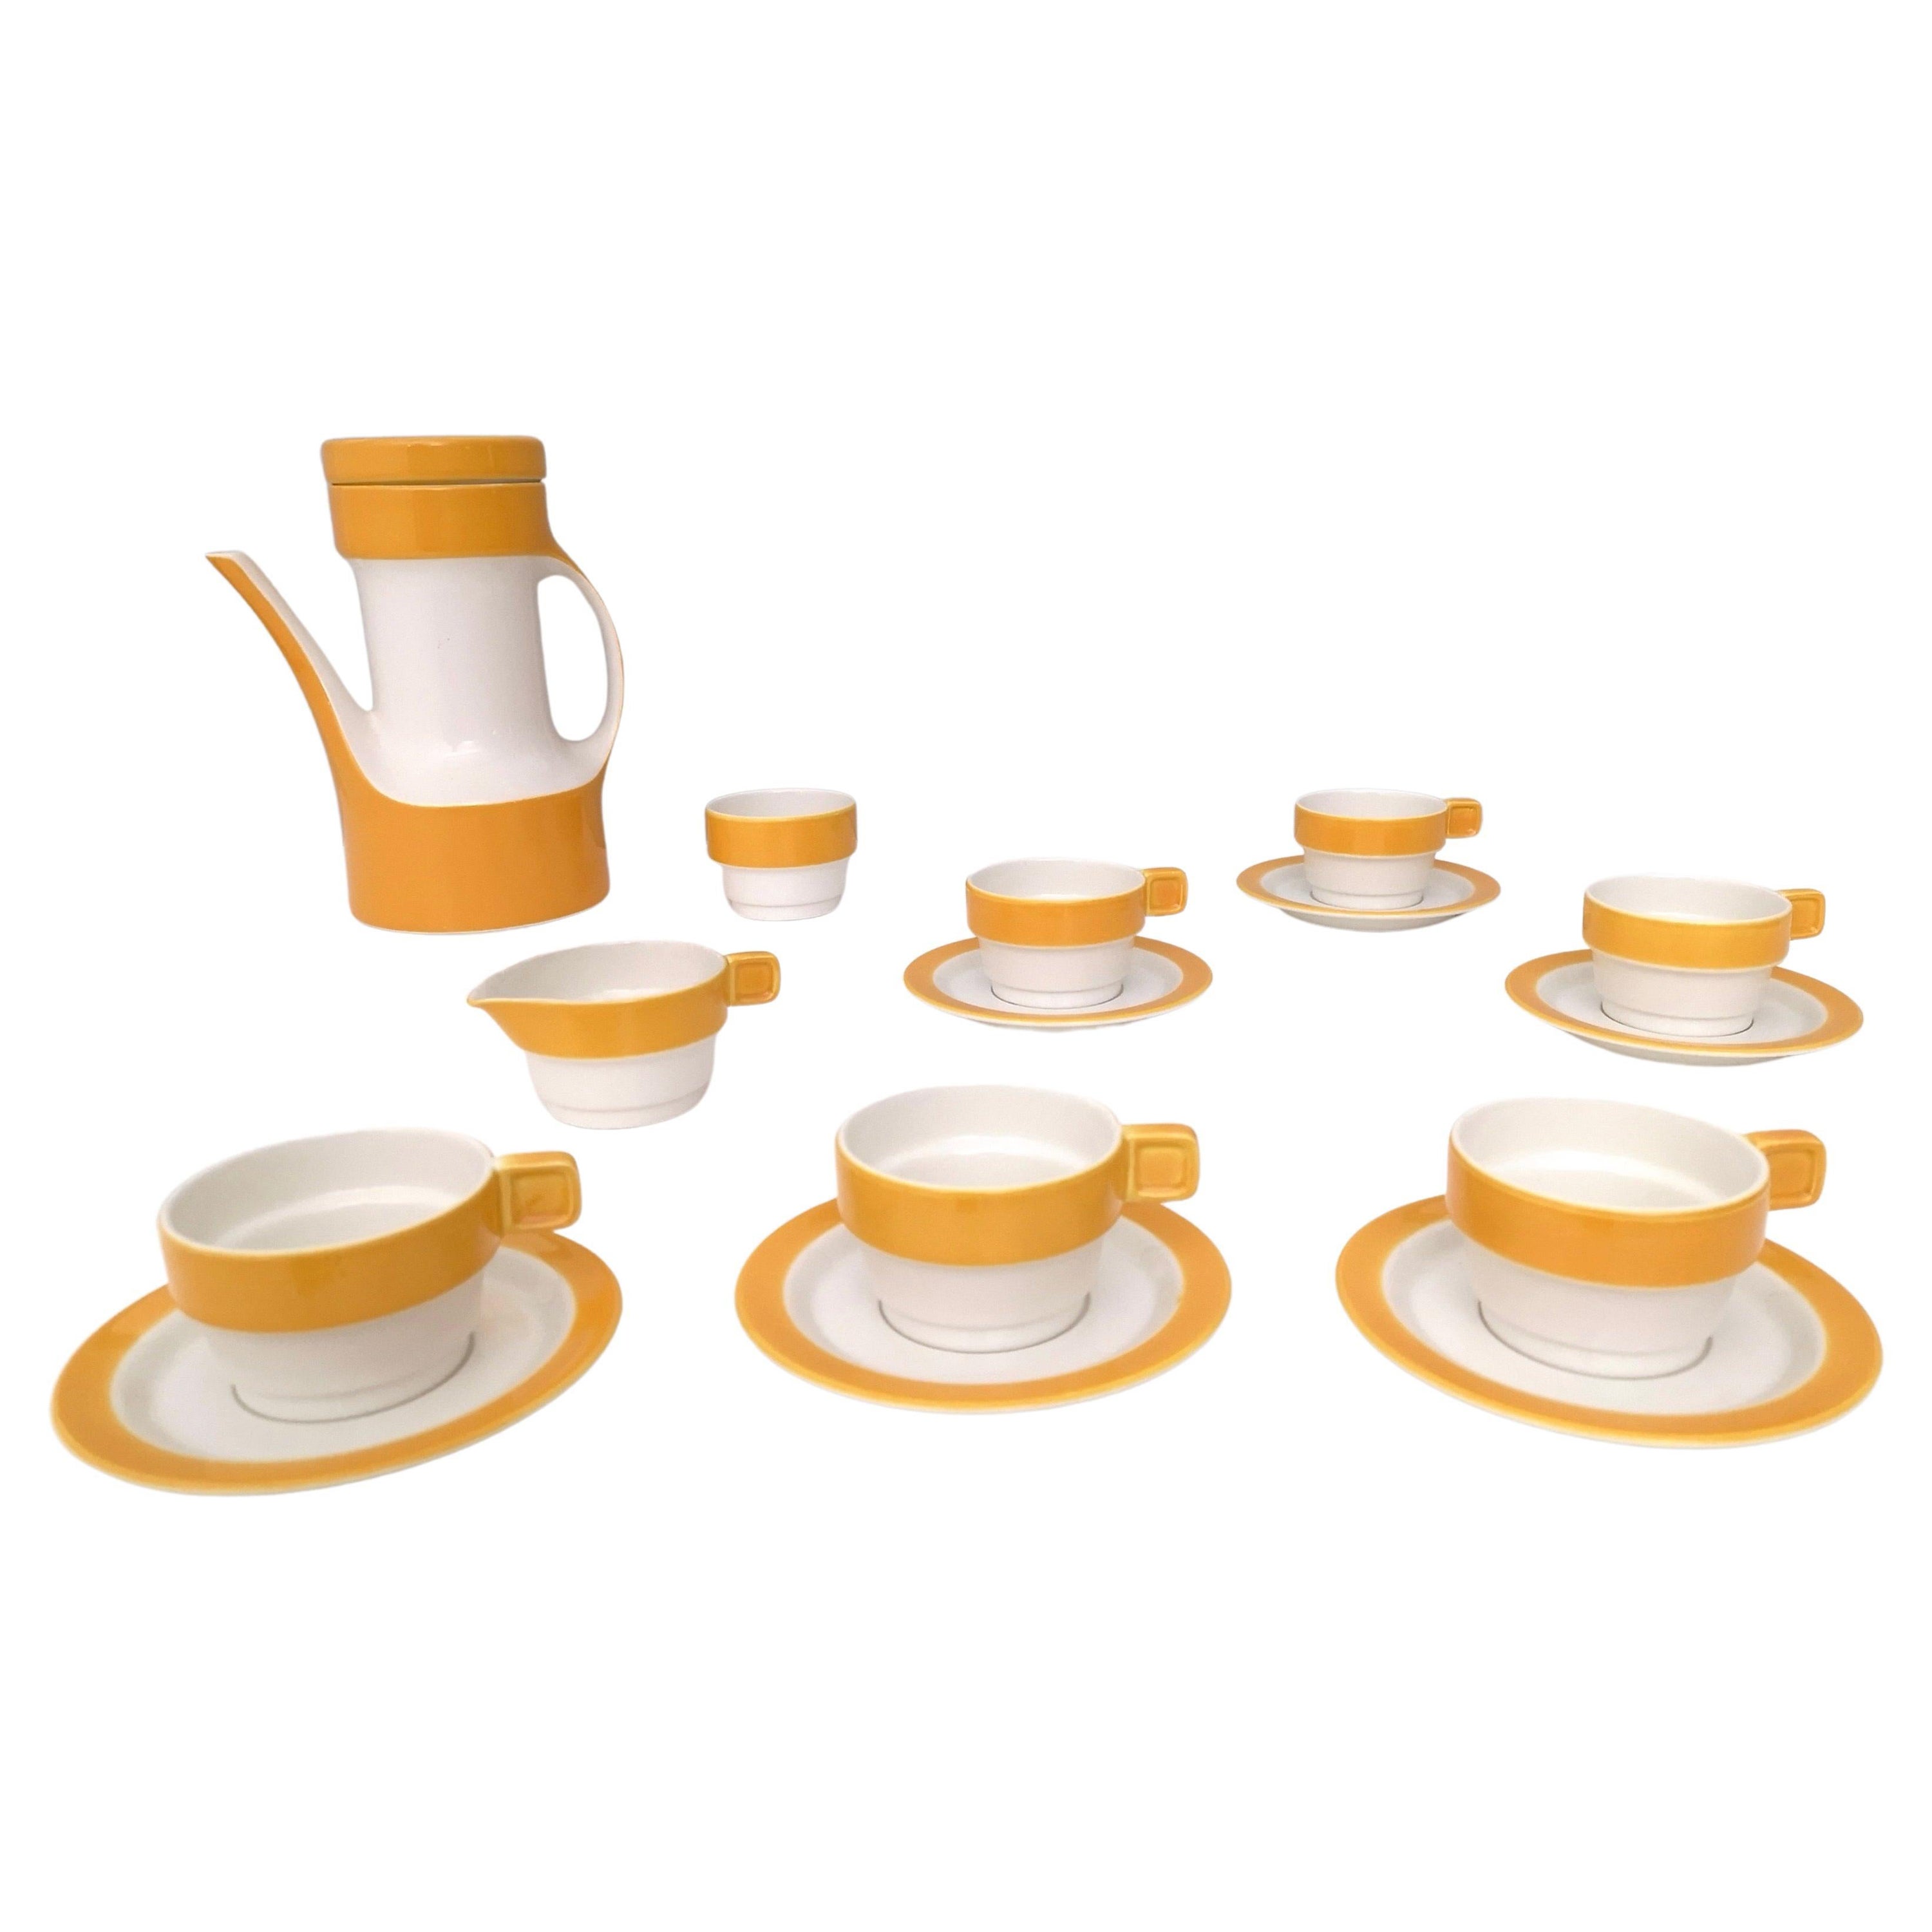 16-Piece Coffee/Teapot Set by Riccardo Schweizer Prod. by Pagnossin Ceramica